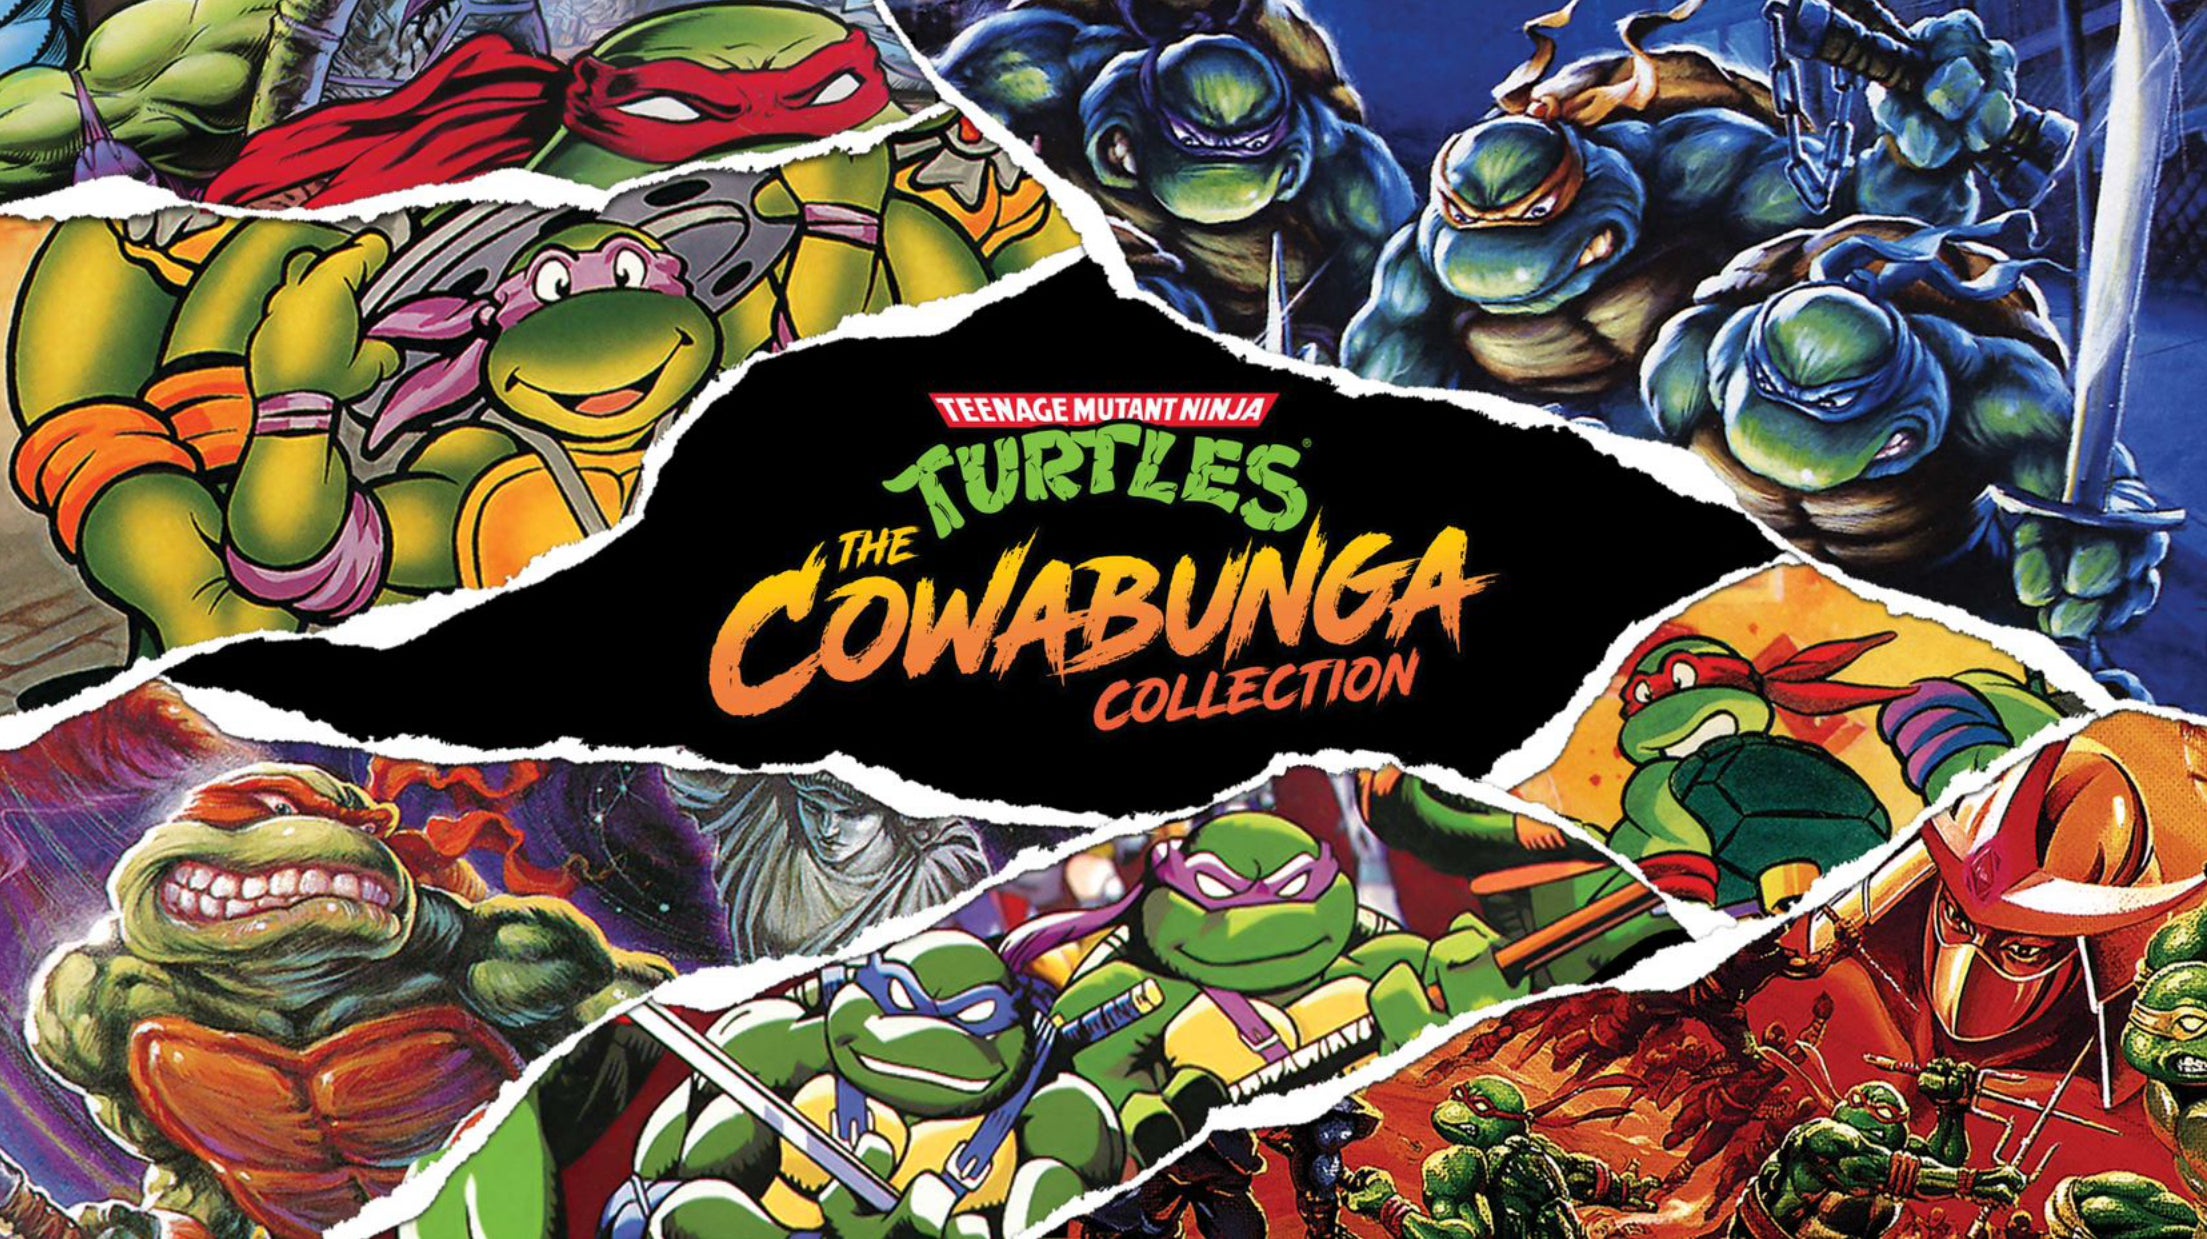 Teenage Mutant Ninja Turtles The Cowabunga Collection Sees Return Of